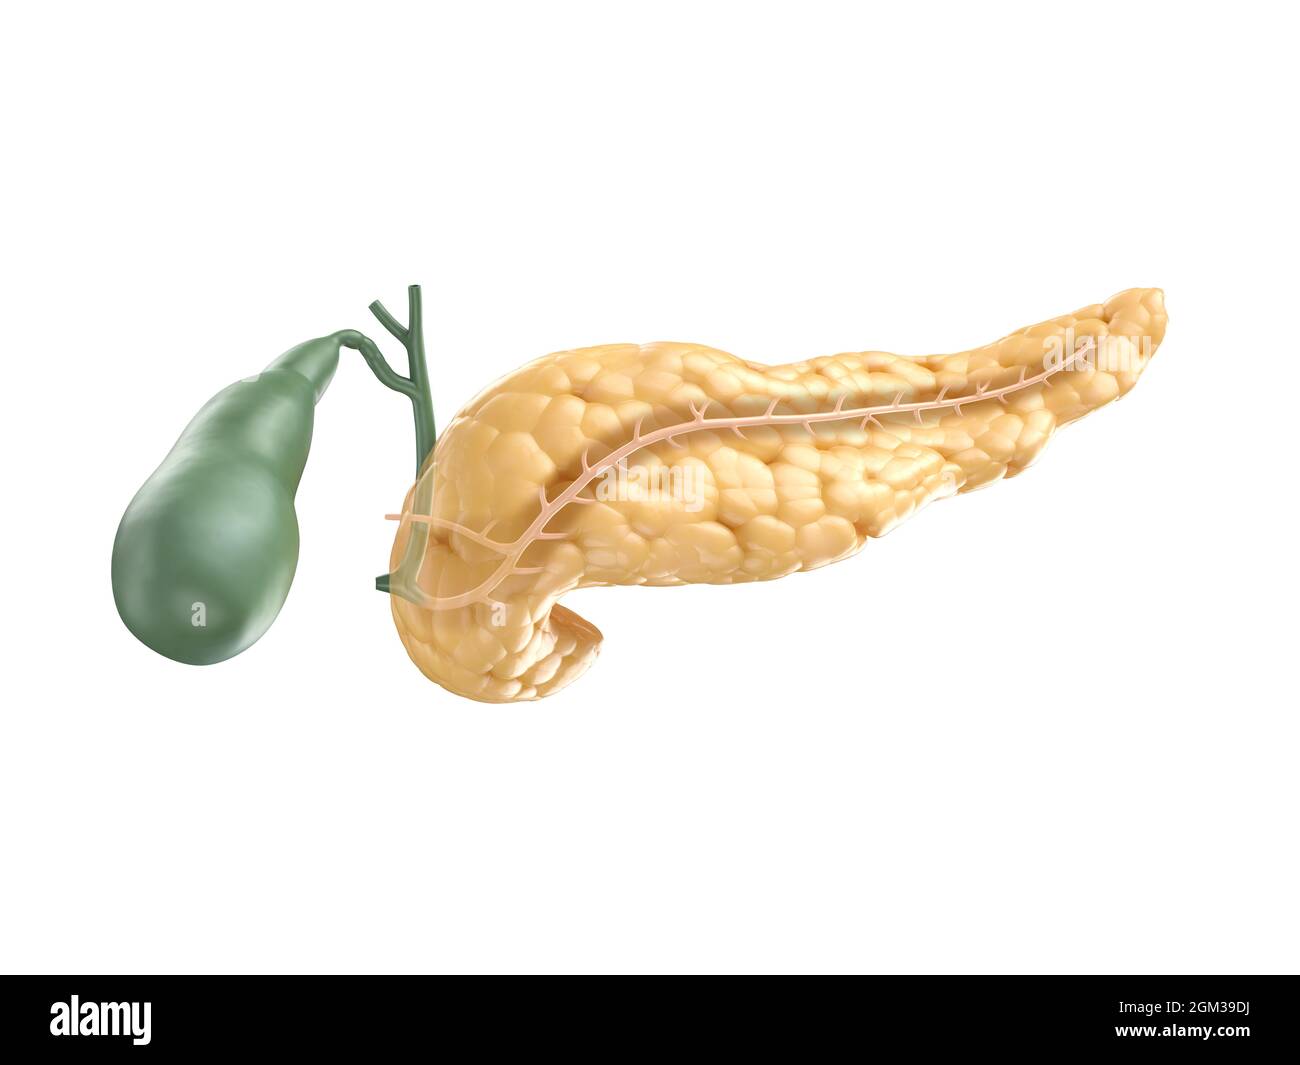 Illustrazione anatomicamente accurata del pancreas umano con cistifellea. Tagliare la sezione del pancreas con il dotto pancreatico visibile. rendering 3d Foto Stock